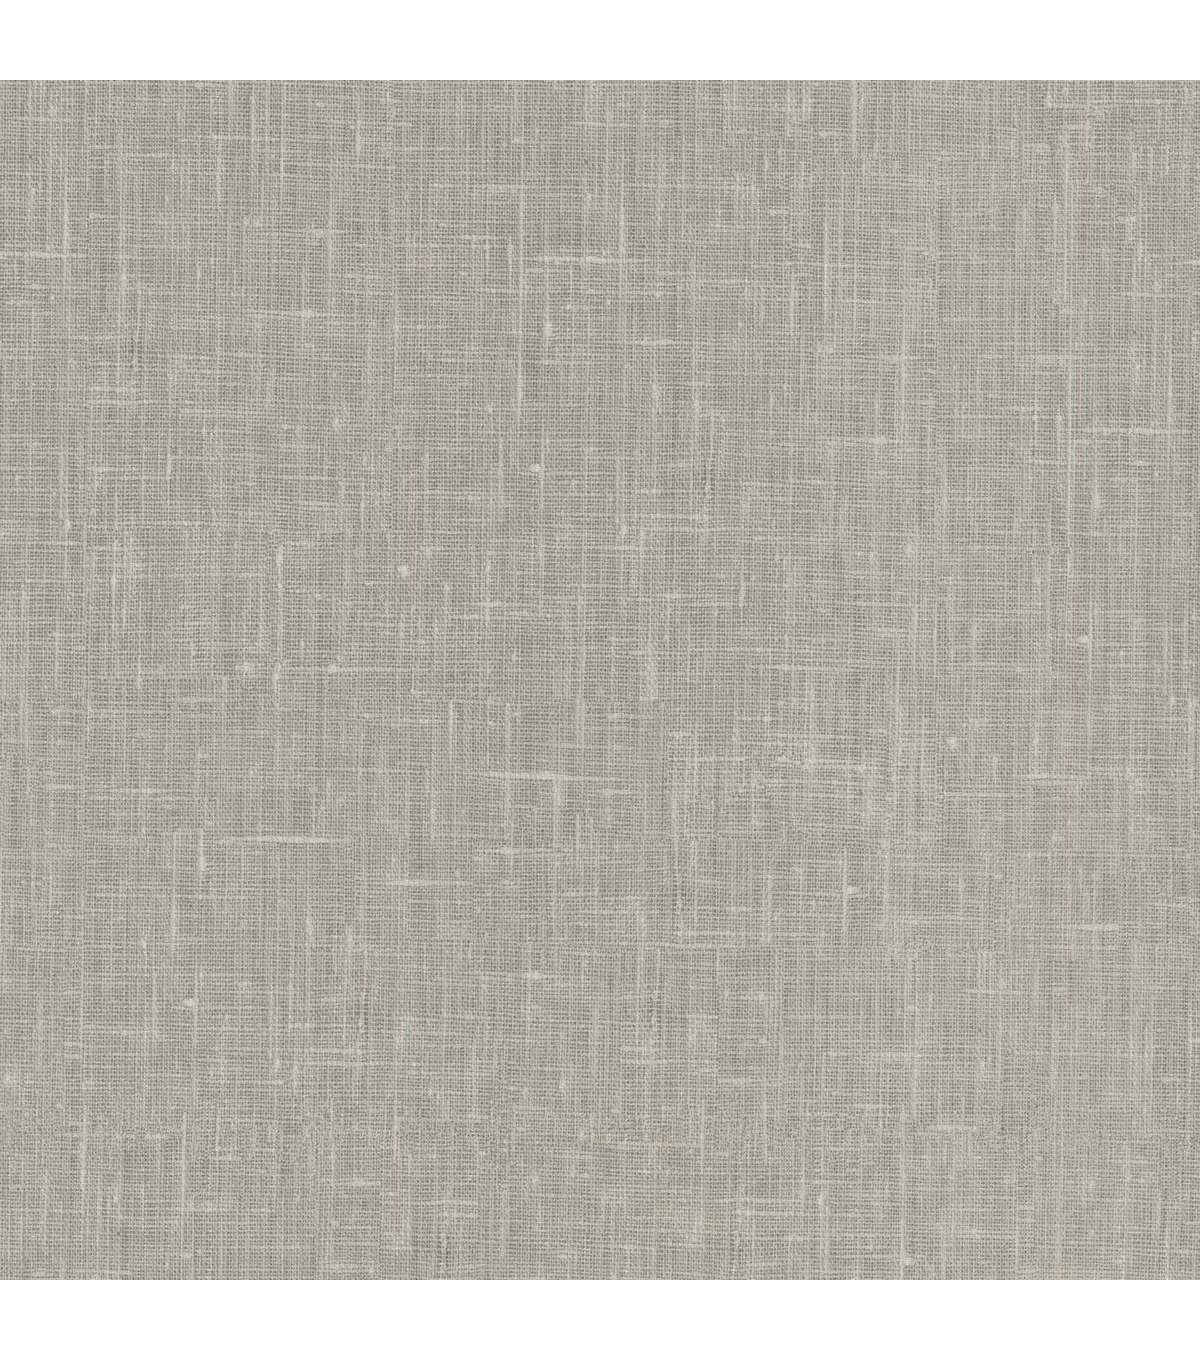 Linge Light Grey Linen Texture Wallpaper Sample Jo Ann